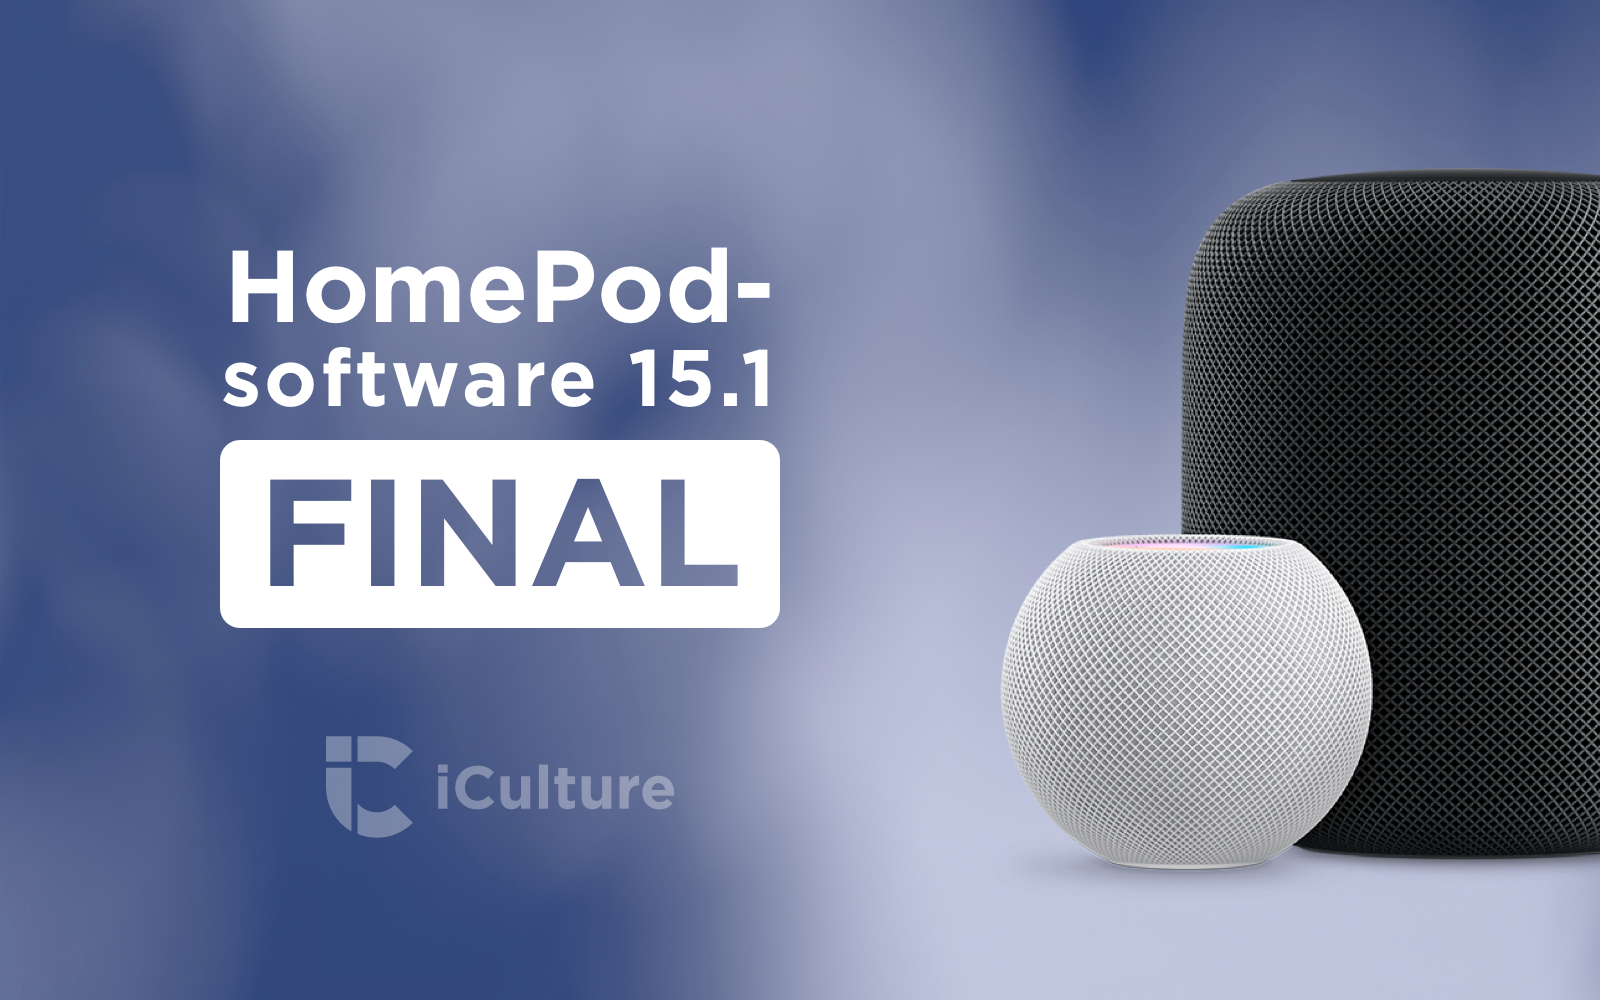 HomePod software-update 15.1 final.